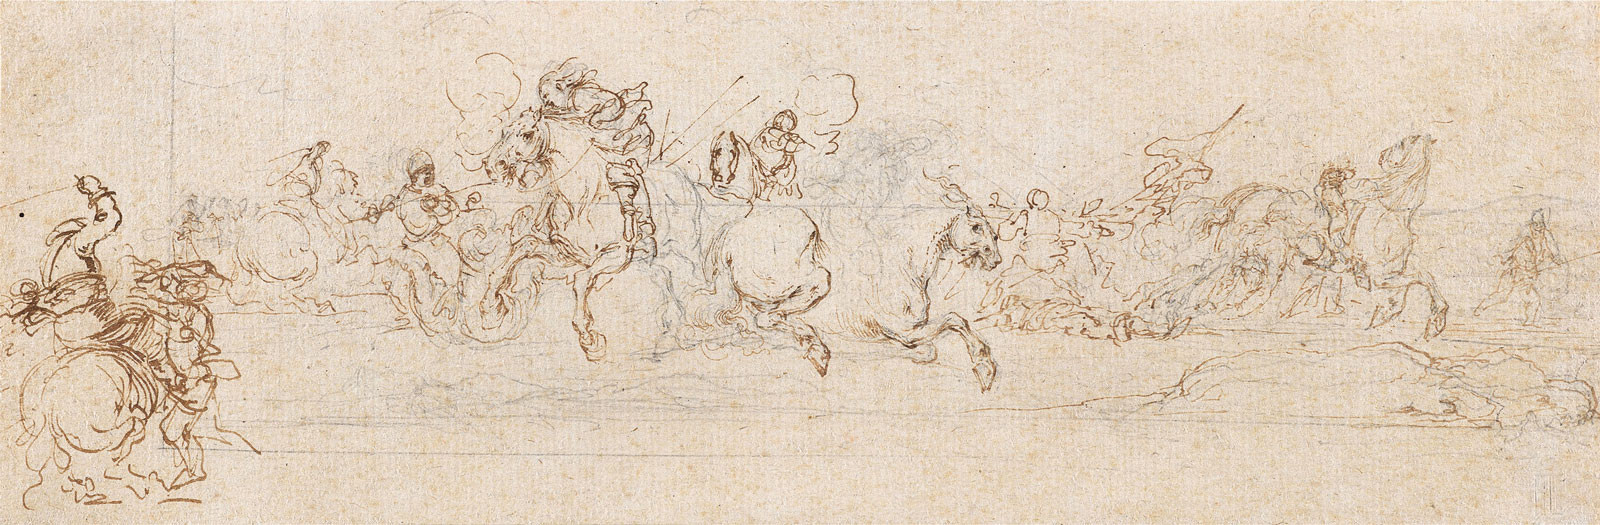 Stefano Della Bella - Ein Kavalleriegefecht, 1638 /1643, 1638 /1643